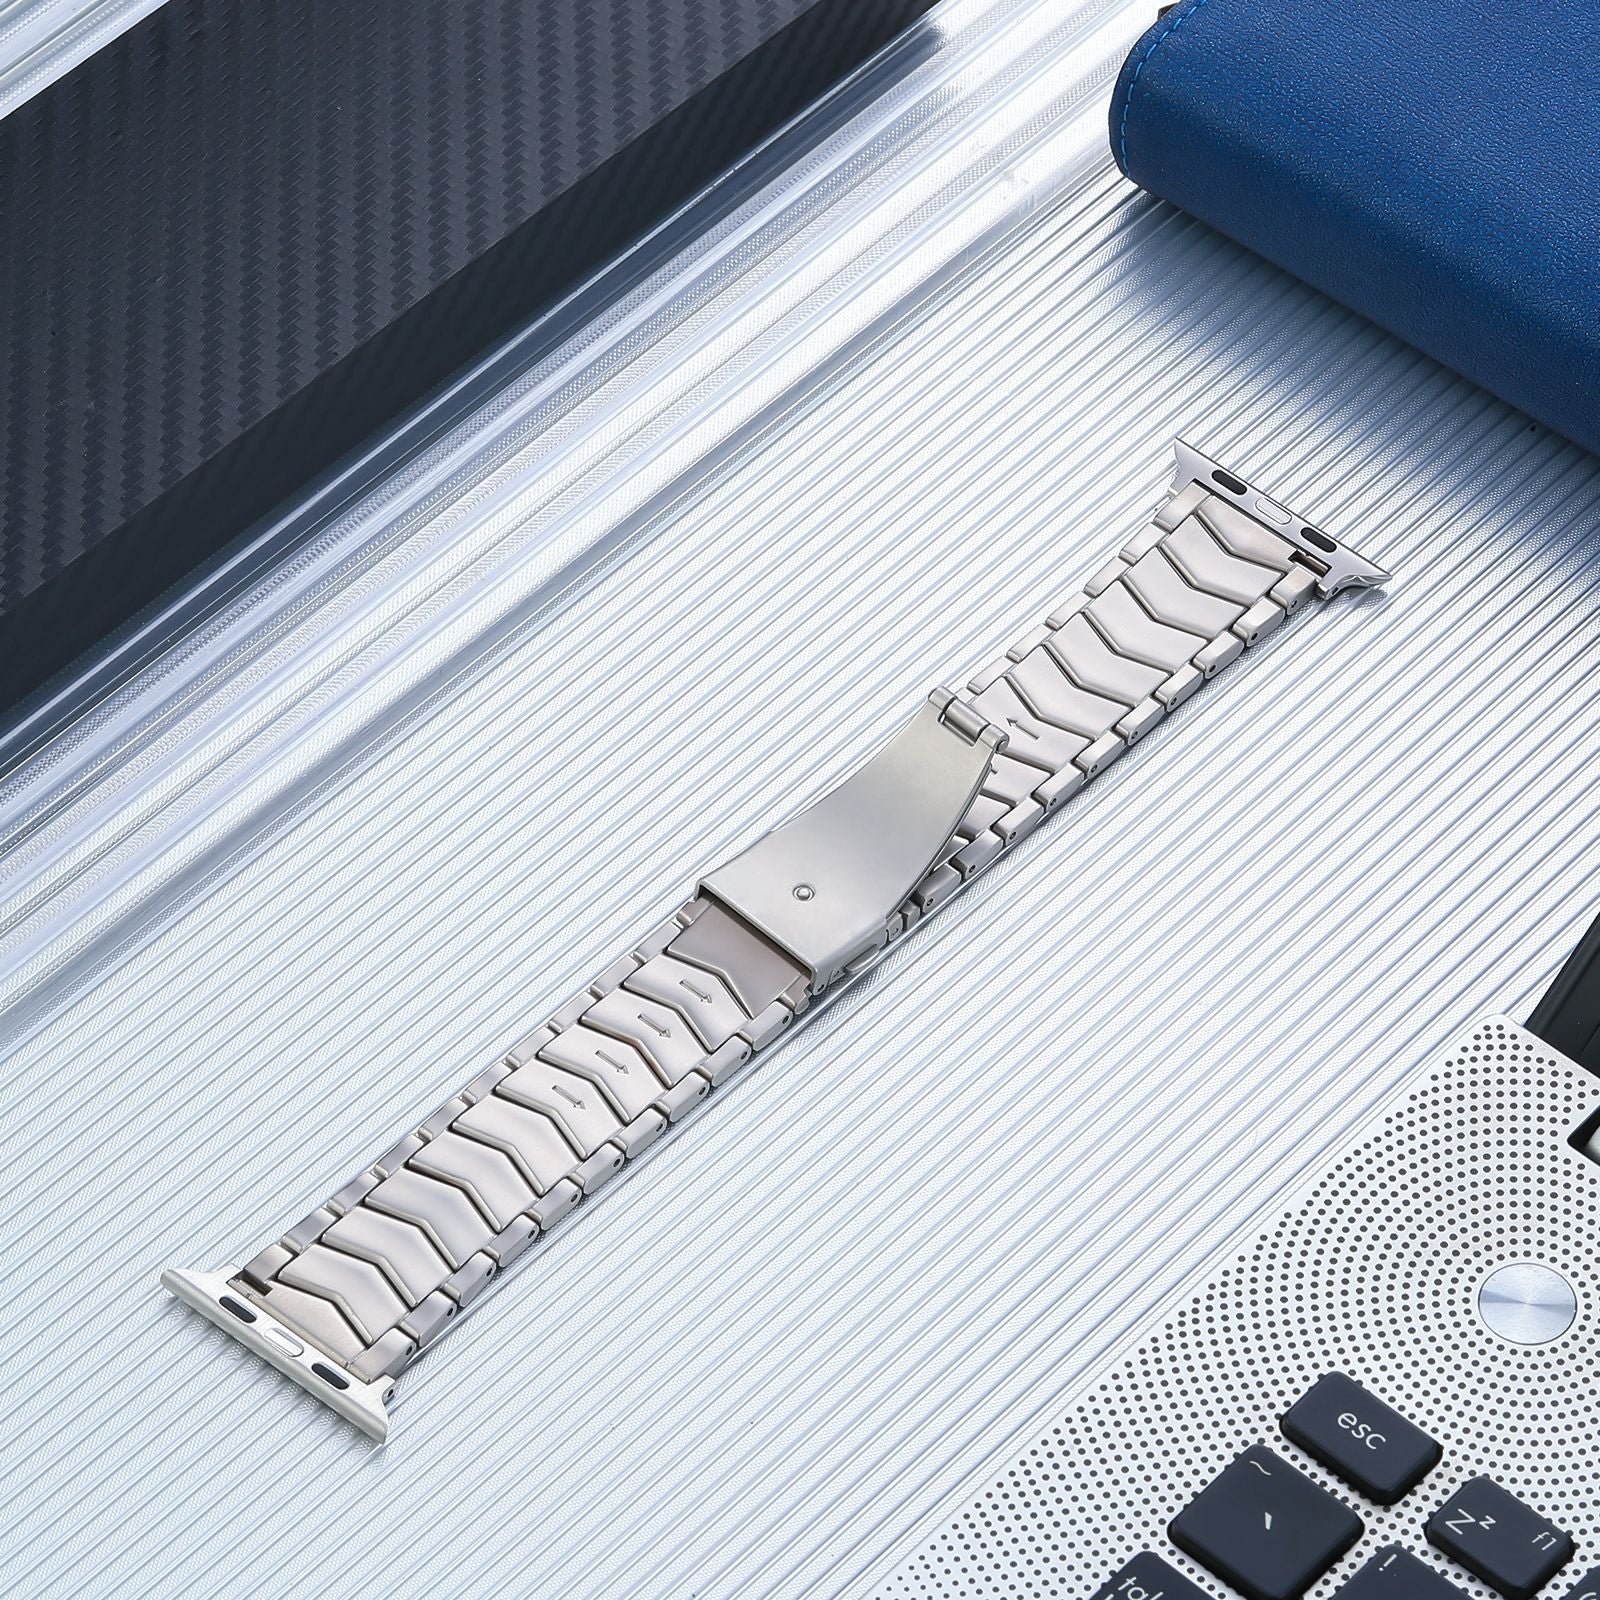 [Apple Watch] Titanium Arched Bracelet